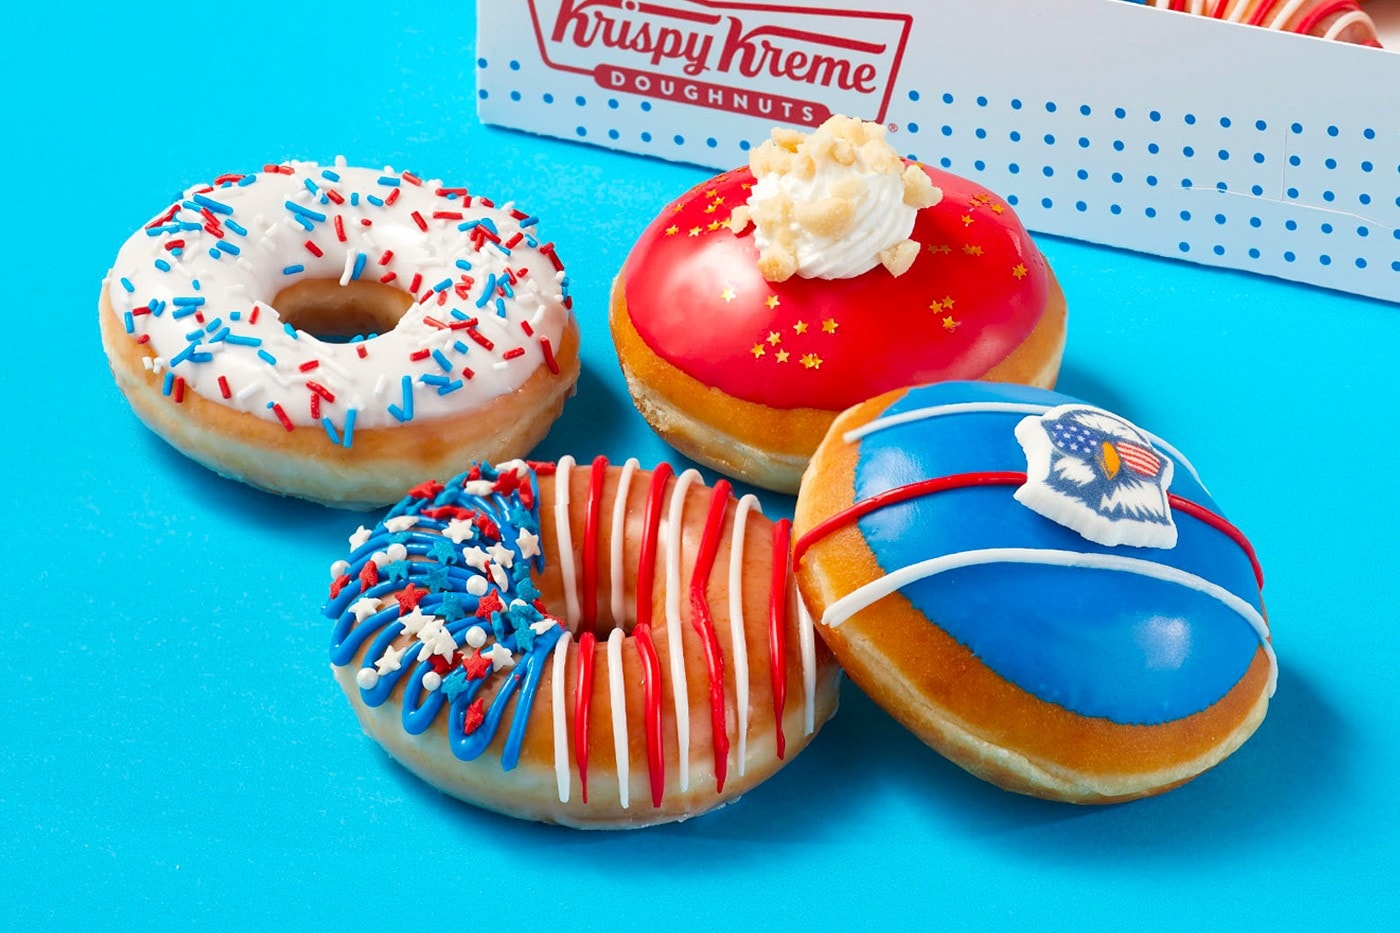 Krispy Kreme 為慶祝美國獨立日推出全新「Star Spangled Box」